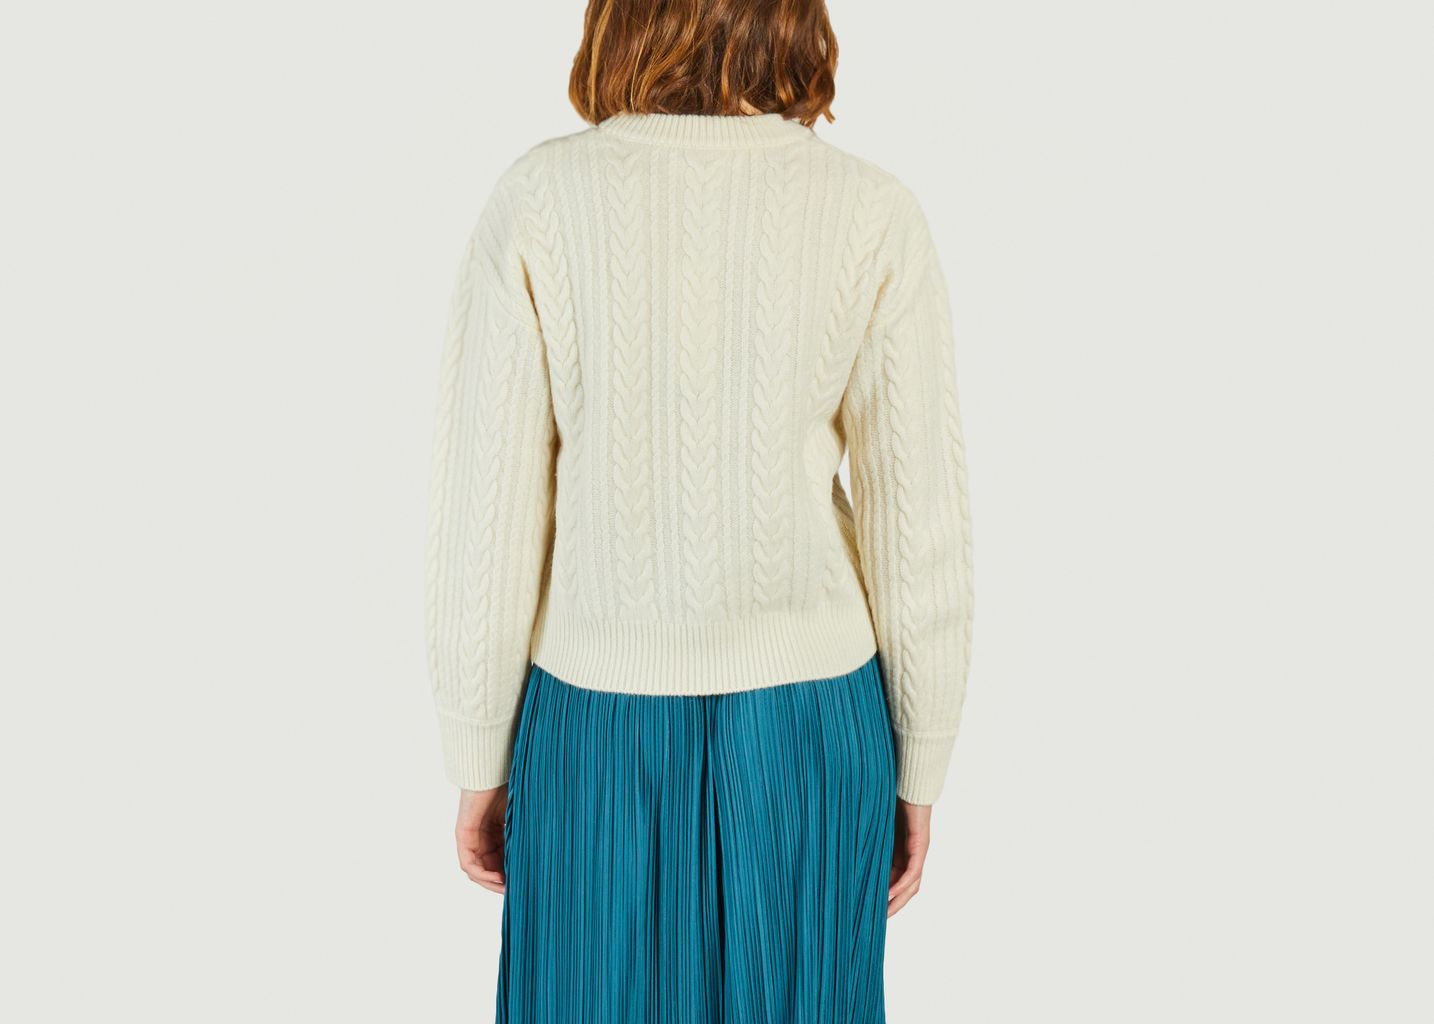 Amelia Ras De Cou Sweater 15023 - Samsoe Samsoe